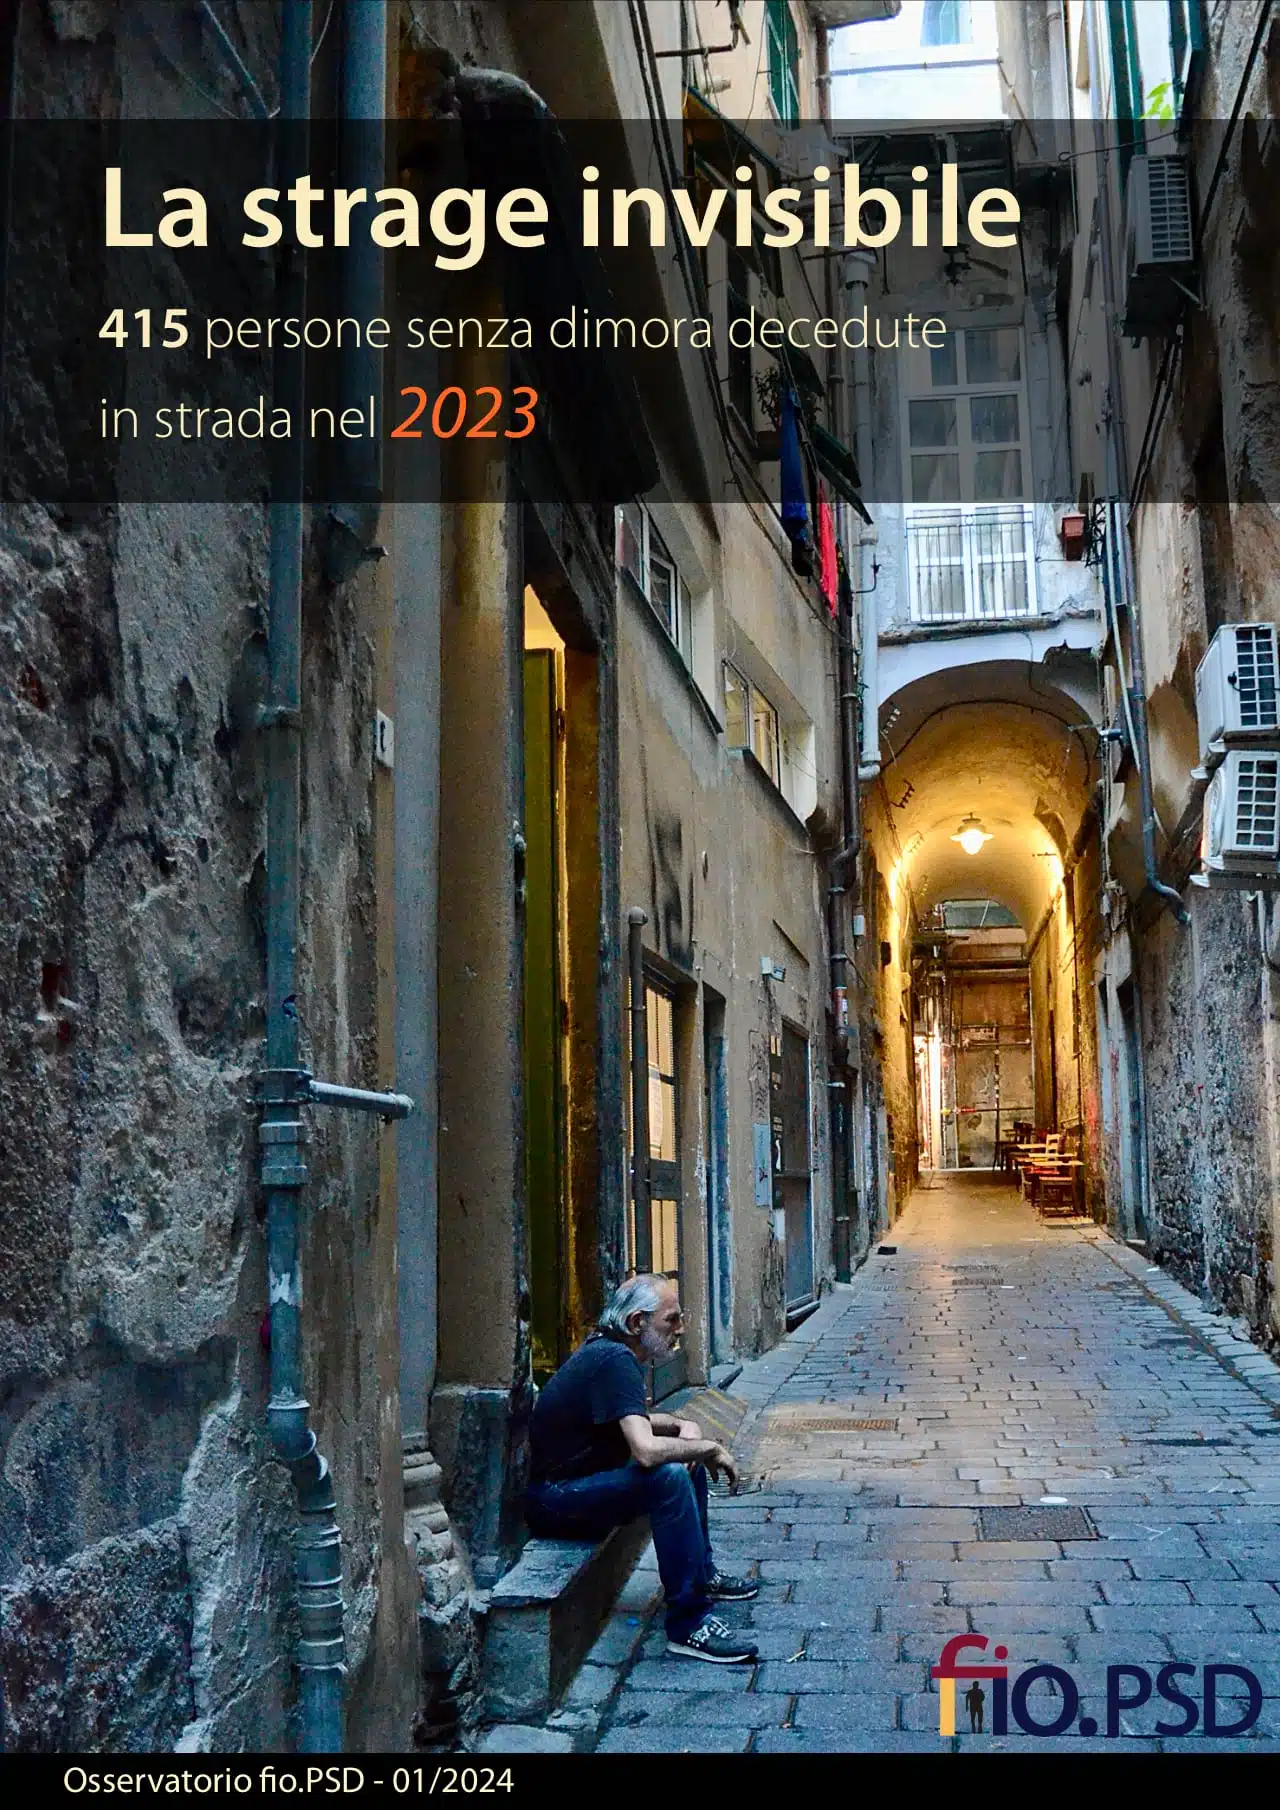 La strage invisibile. 415 persone senza dimora decedute in strada nel 2023